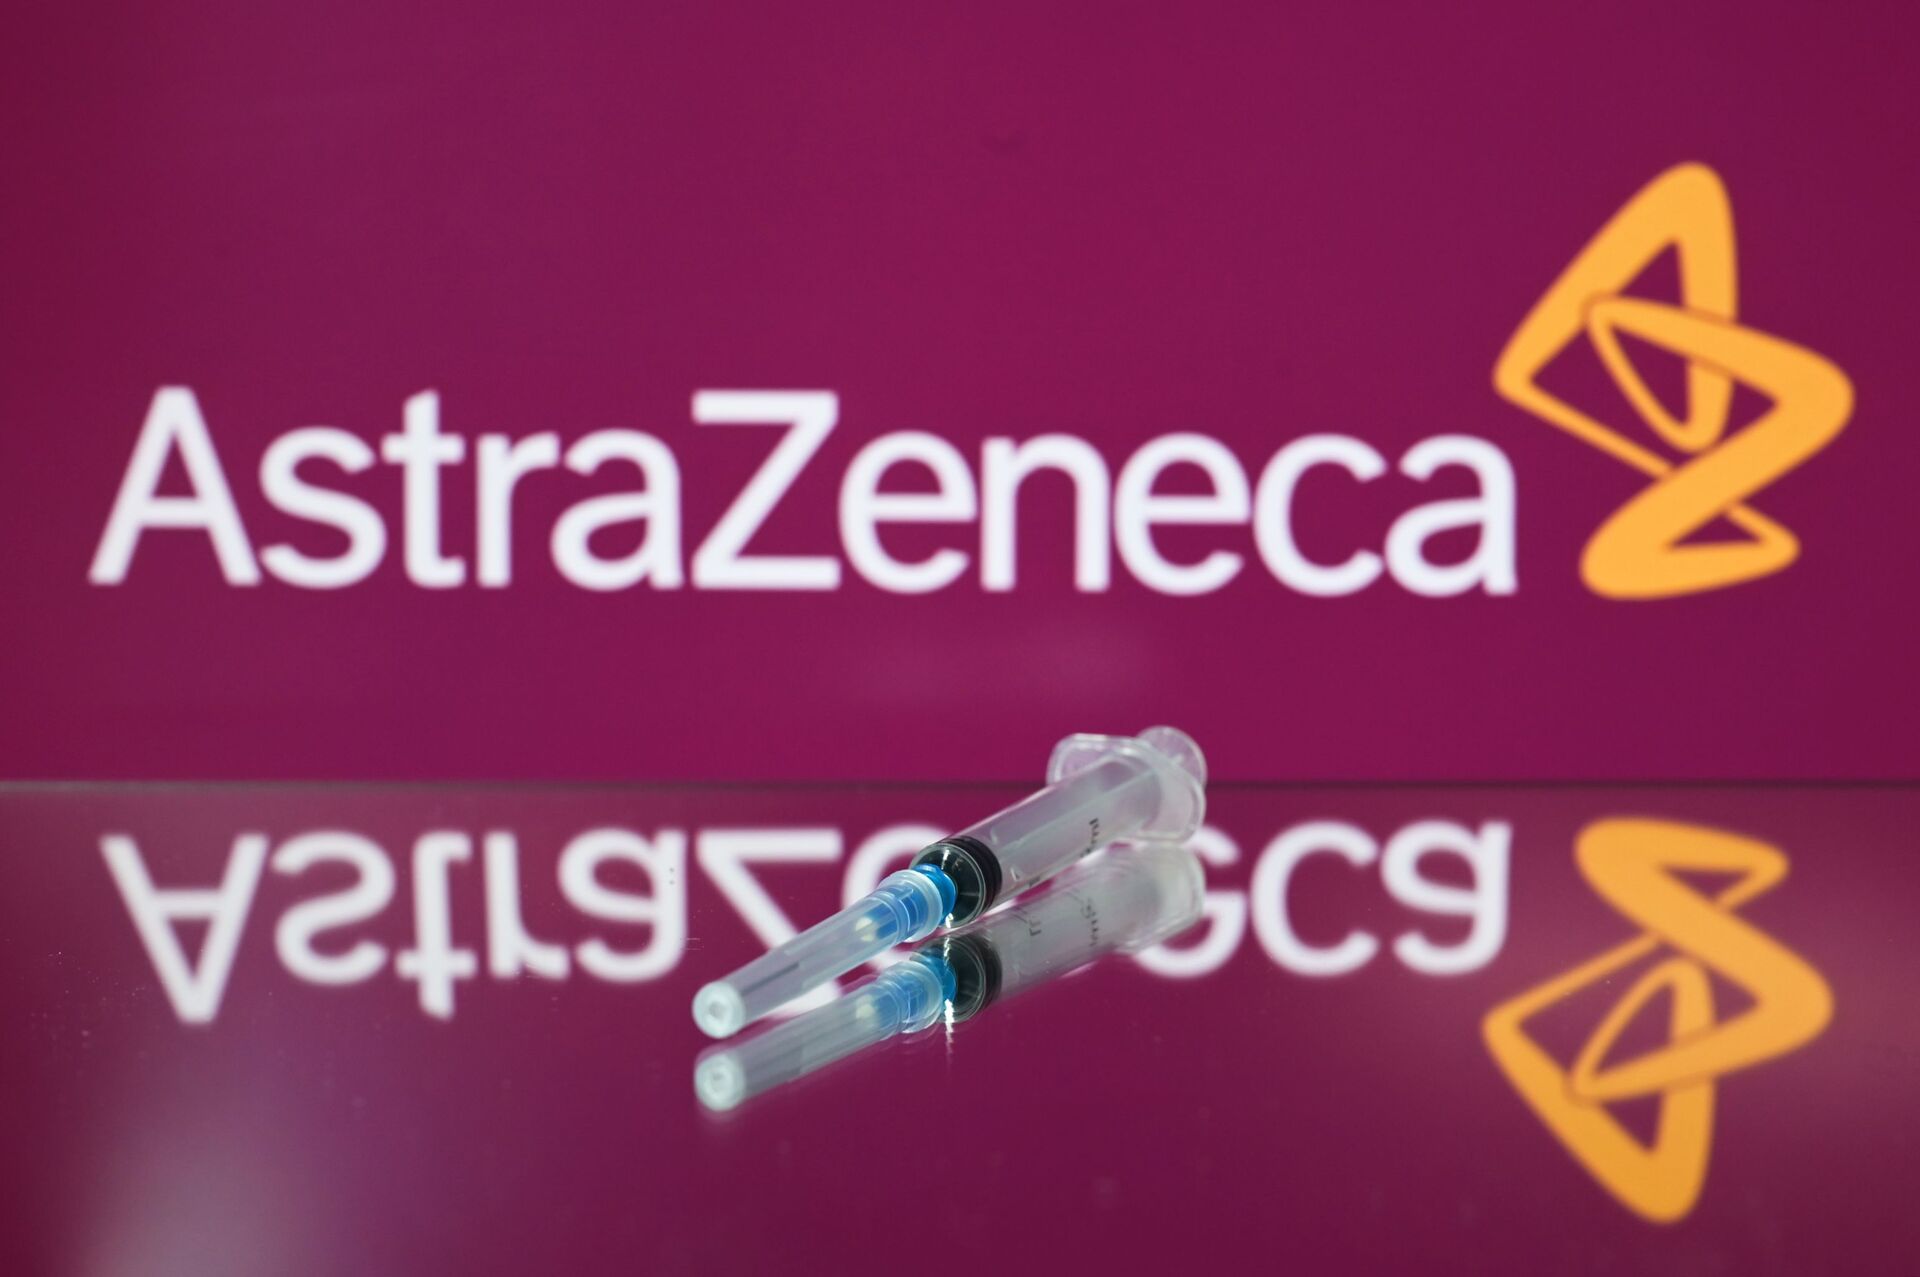 Fiocruz anuncia início da produção local em larga escala da vacina de Oxford/AstraZeneca - Sputnik Brasil, 1920, 08.03.2021